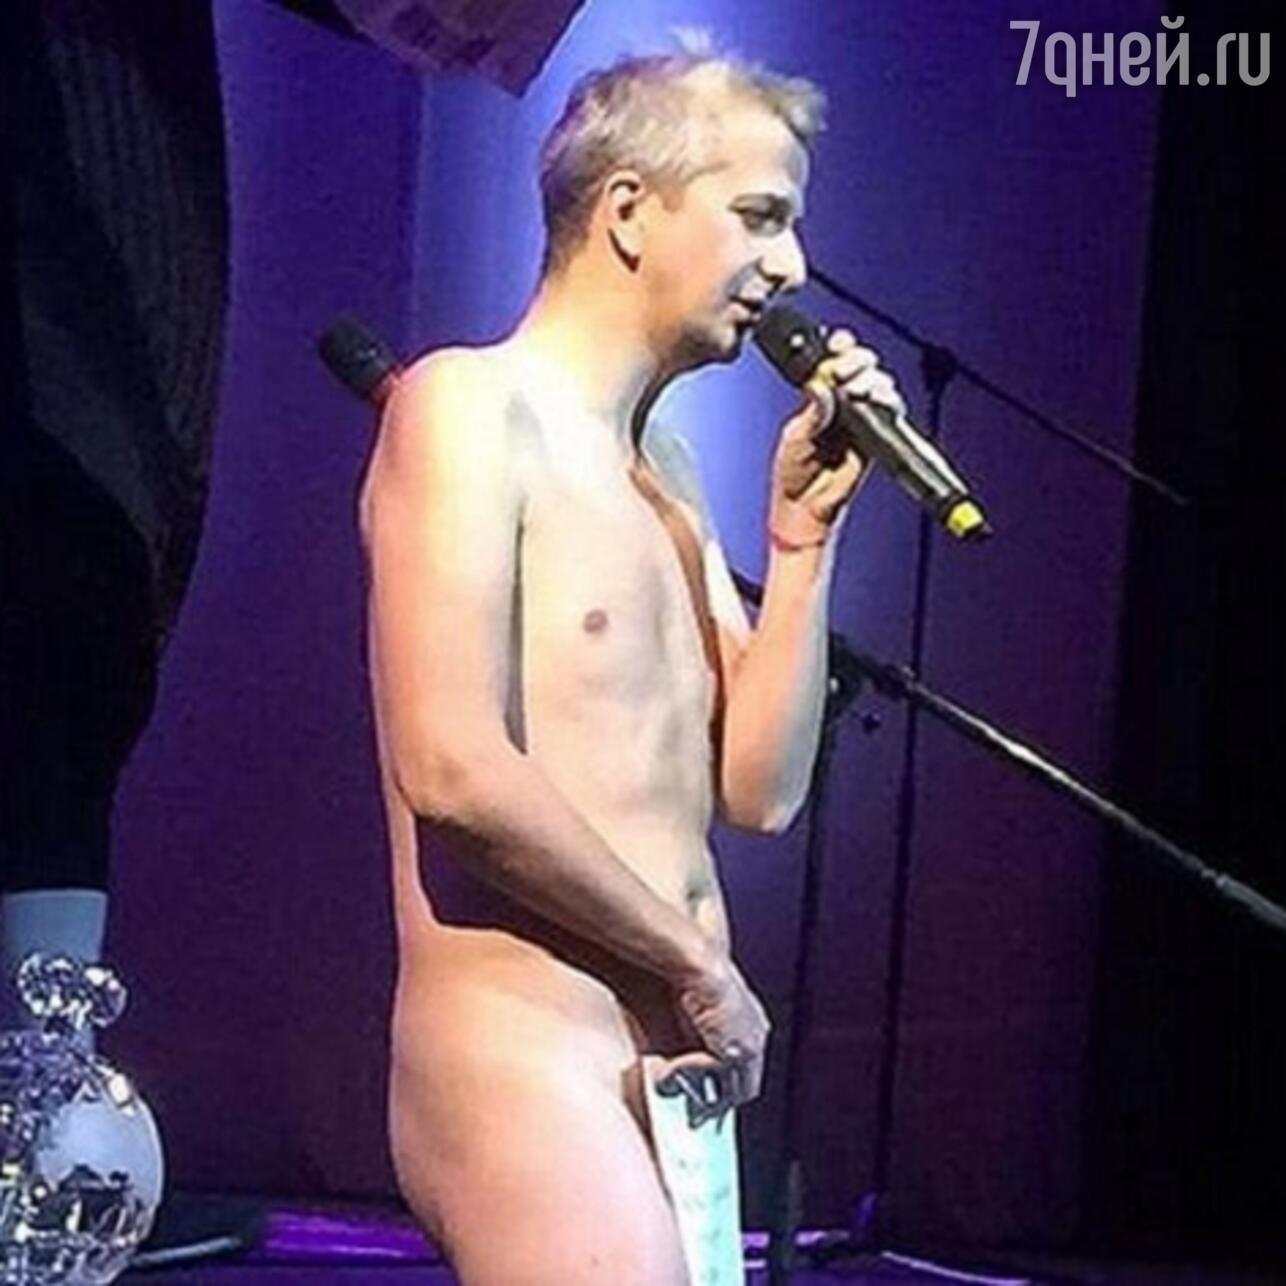 голые певцы россии фото 49